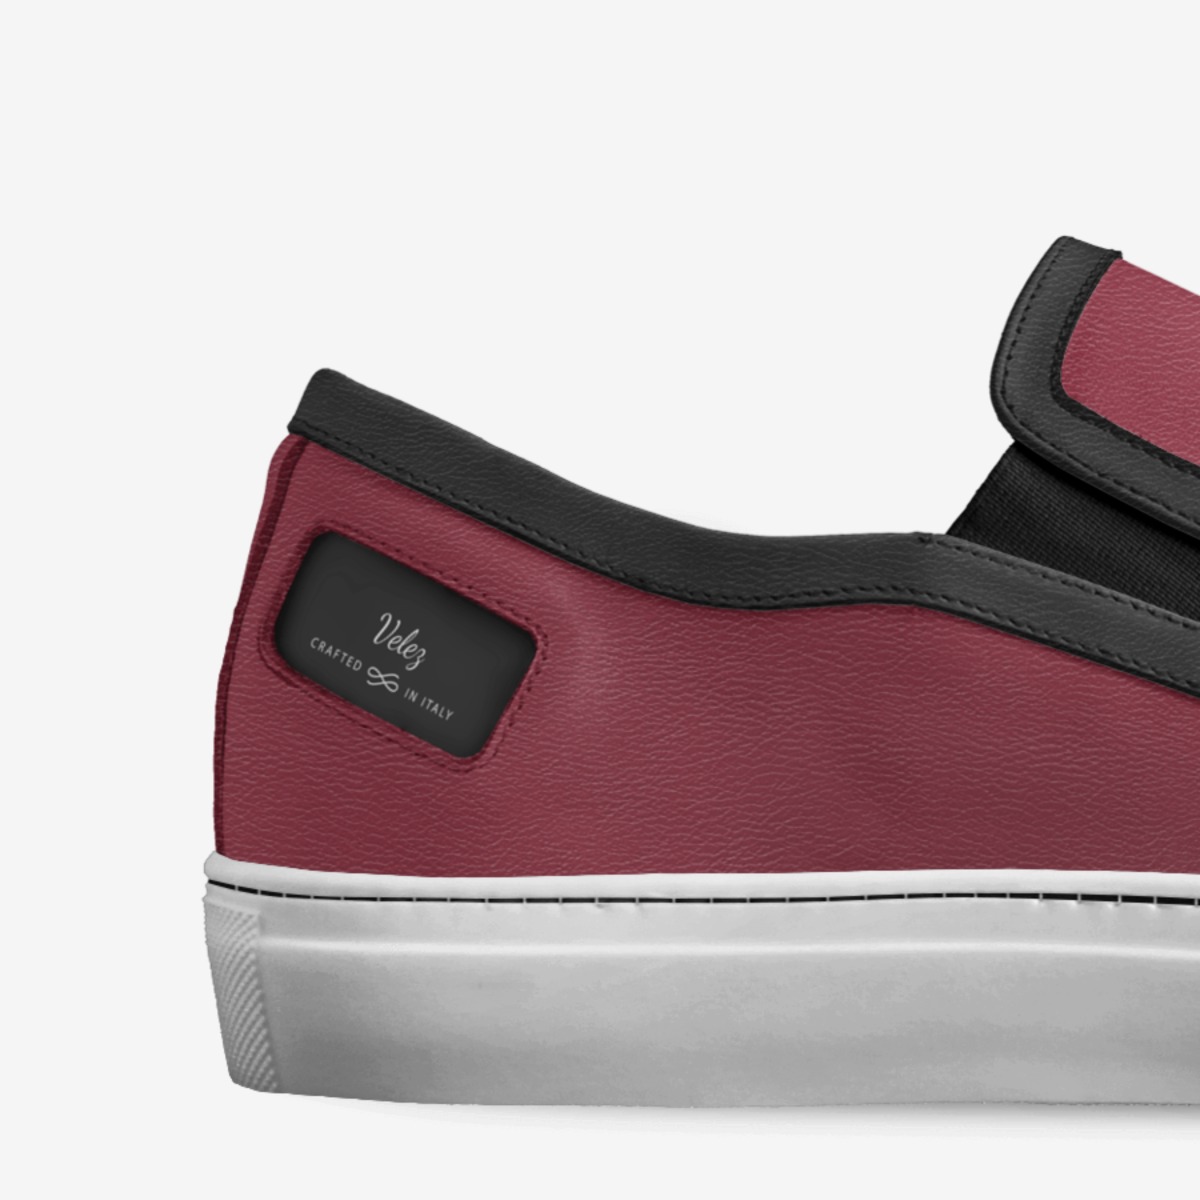 Velez | A Custom Shoe concept by Luke Velez